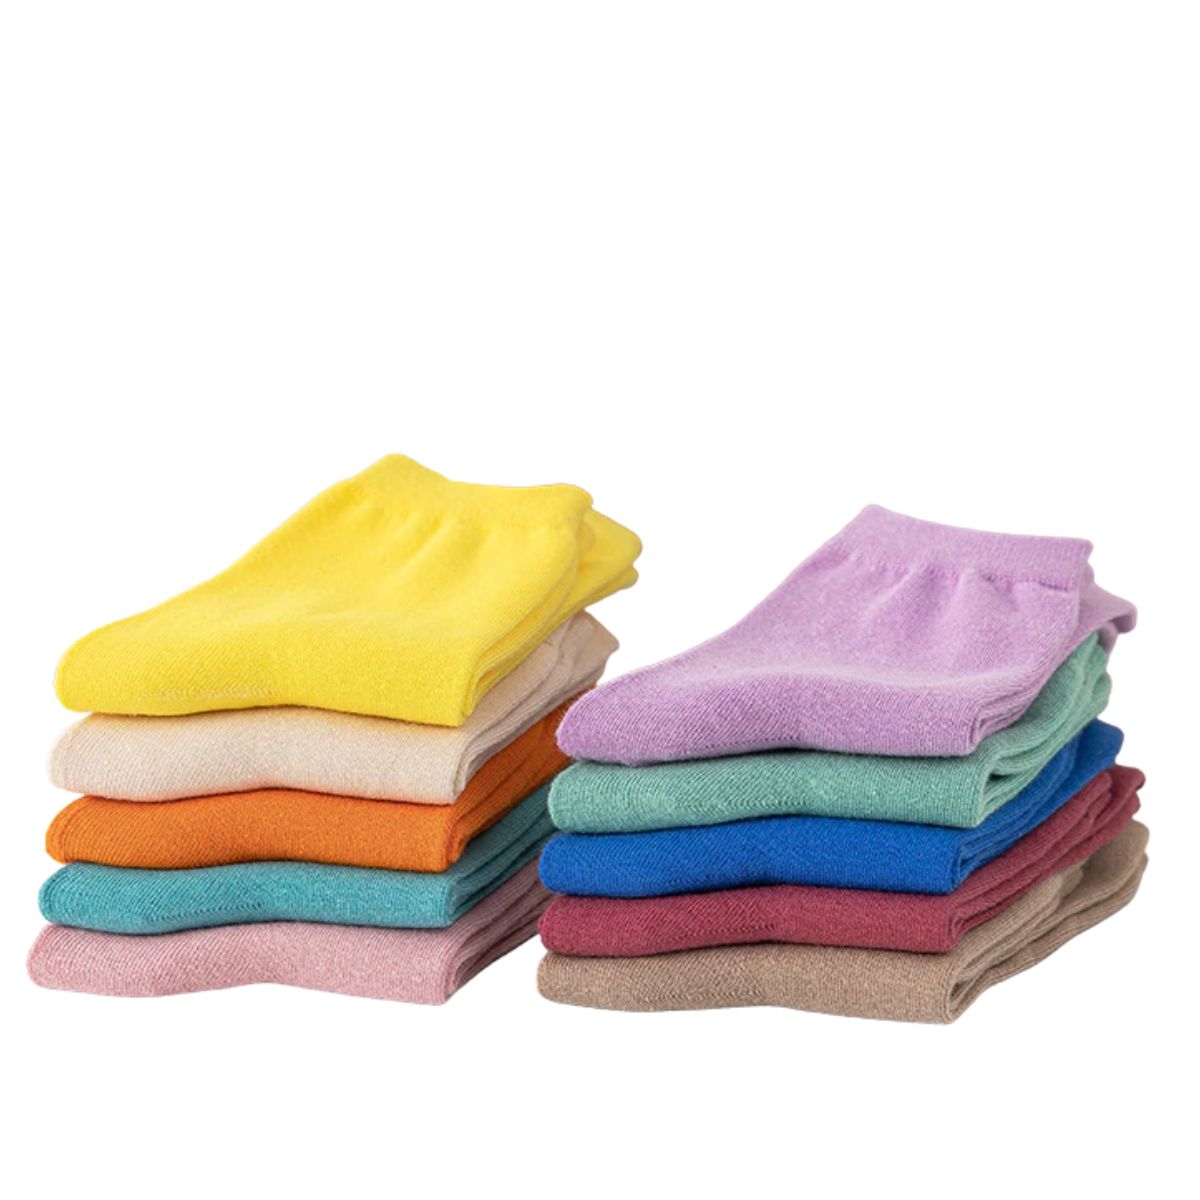 Calcetines antiderrapantes para niños varias tallas (12 pares)